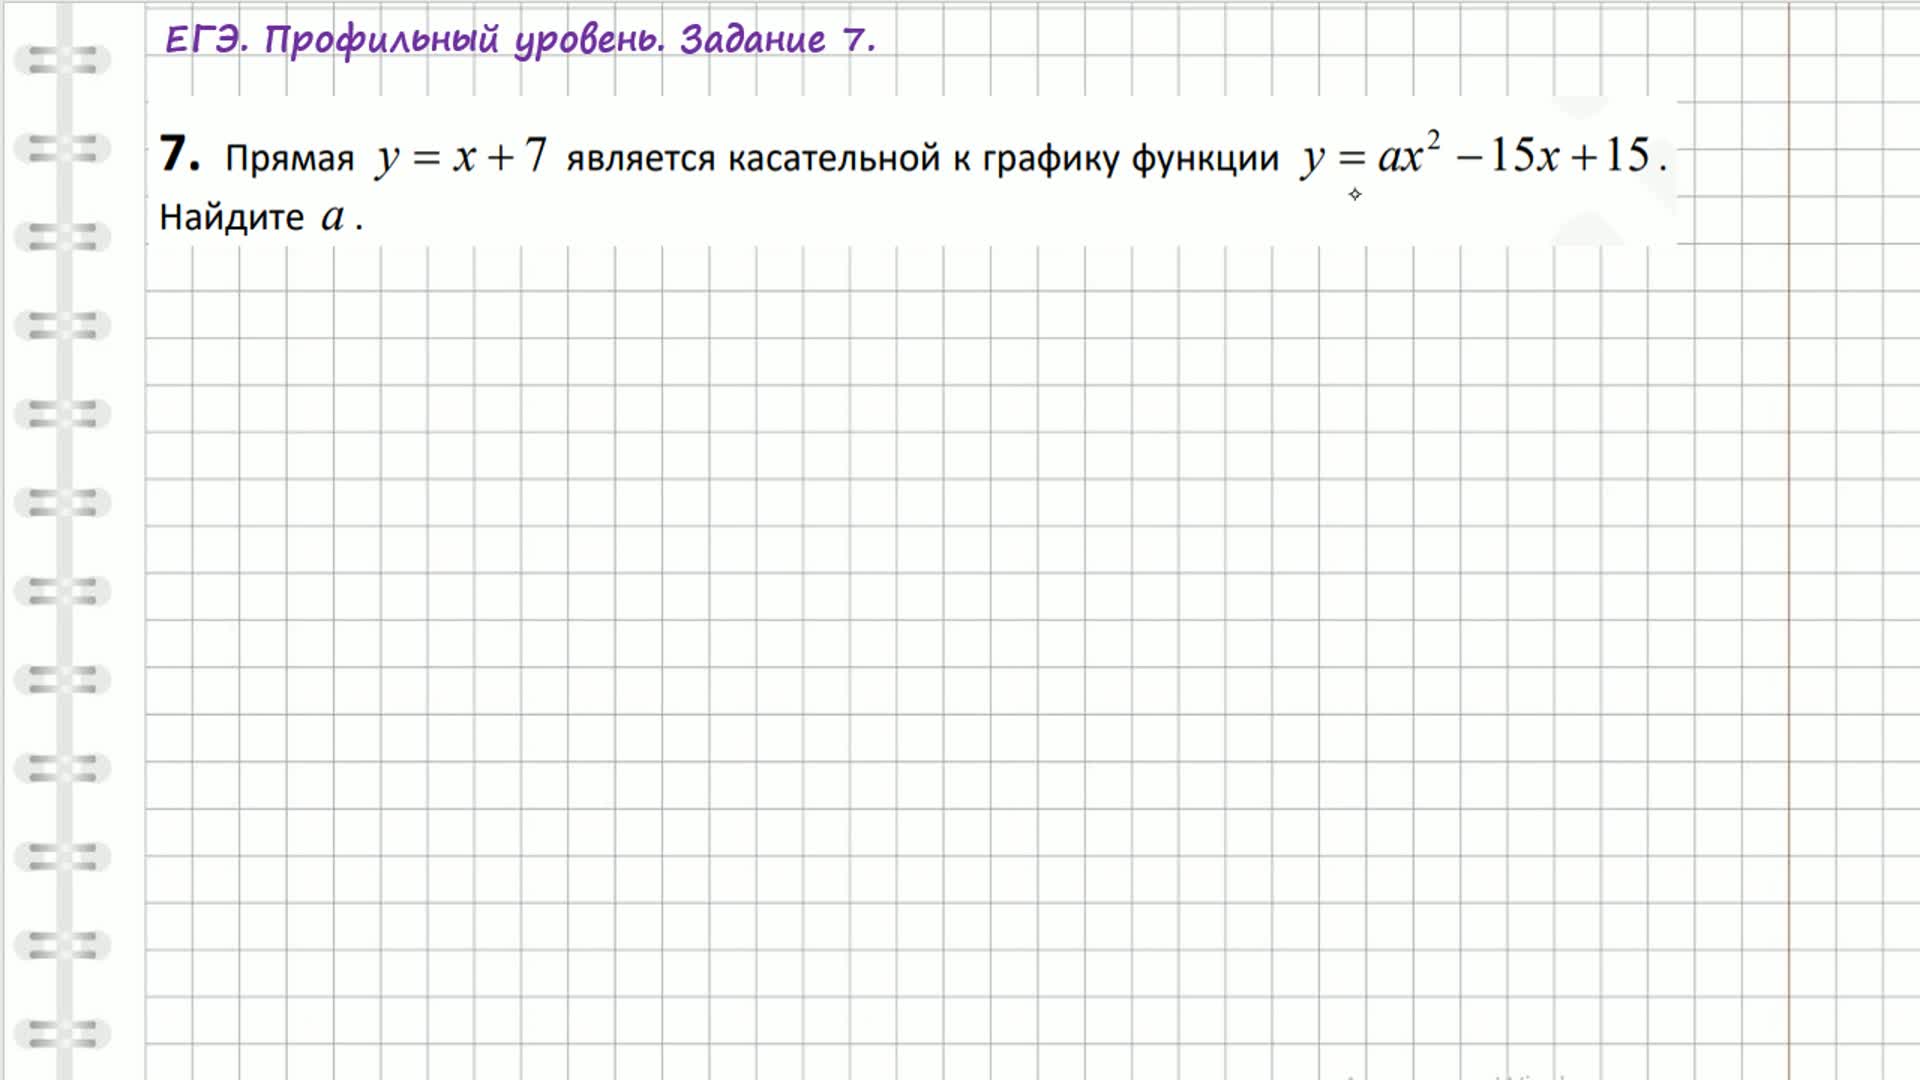 Прямая является касательной найдите с. Прямая является касательной к графику функции Найдите с. Прямая является касательной к графику функции Найдите c.. Прямая у 8х 2 является касательной к графику функции у ах2 18 Найдите а.